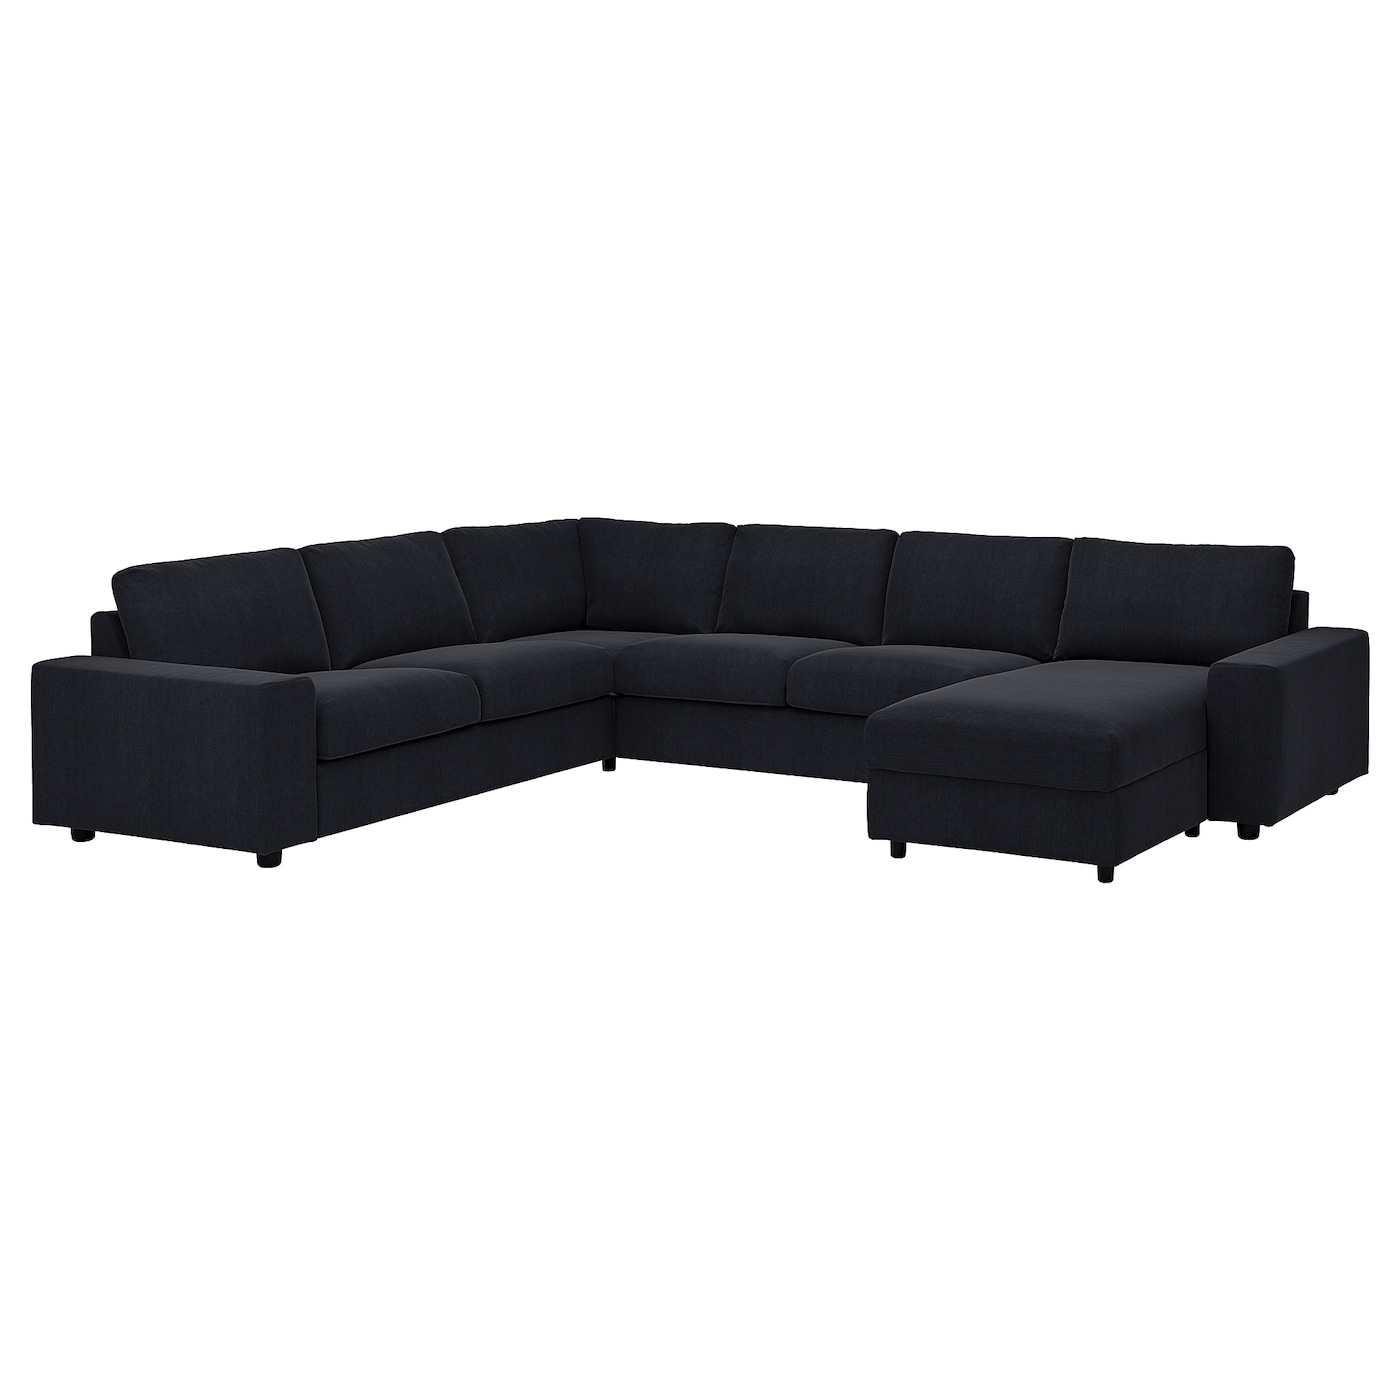 ВИМЛЕ Диван угловой, 5-местный. диван+диван, с широкими подлокотниками/Saxemara черно-синий VIMLE IKEA журнал синий диван 8